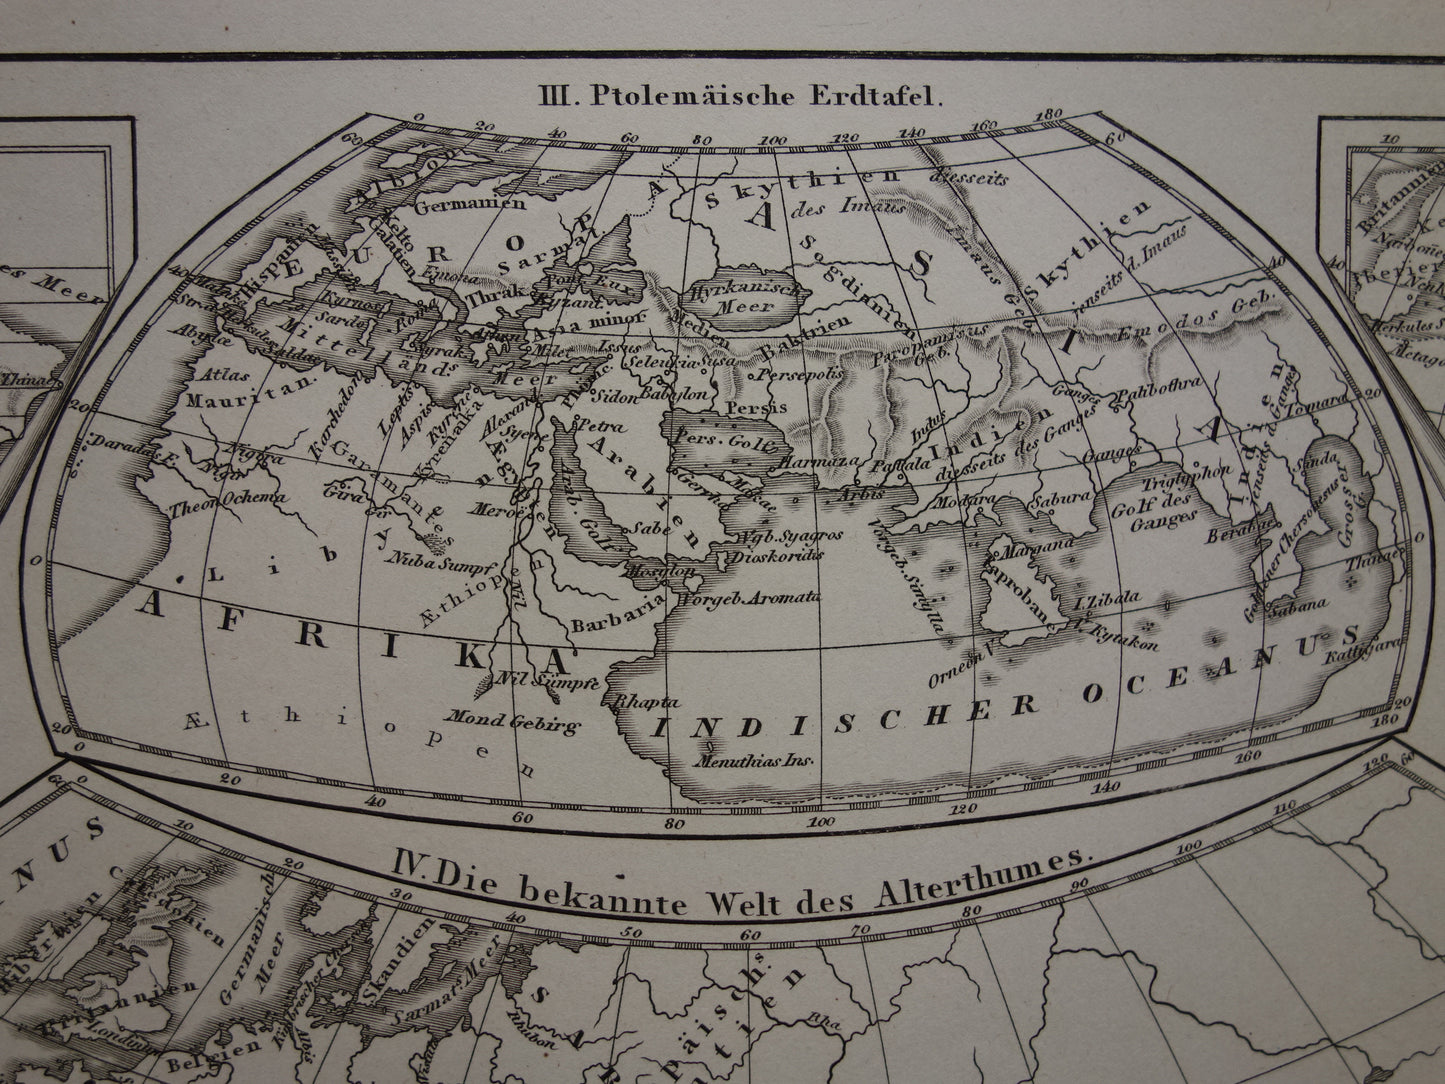 Antieke historische WERELDKAARTEN 1849 oude print met kaart van Strabo Ptolemaeus Herodotus van de wereld in de klassieke oudheid